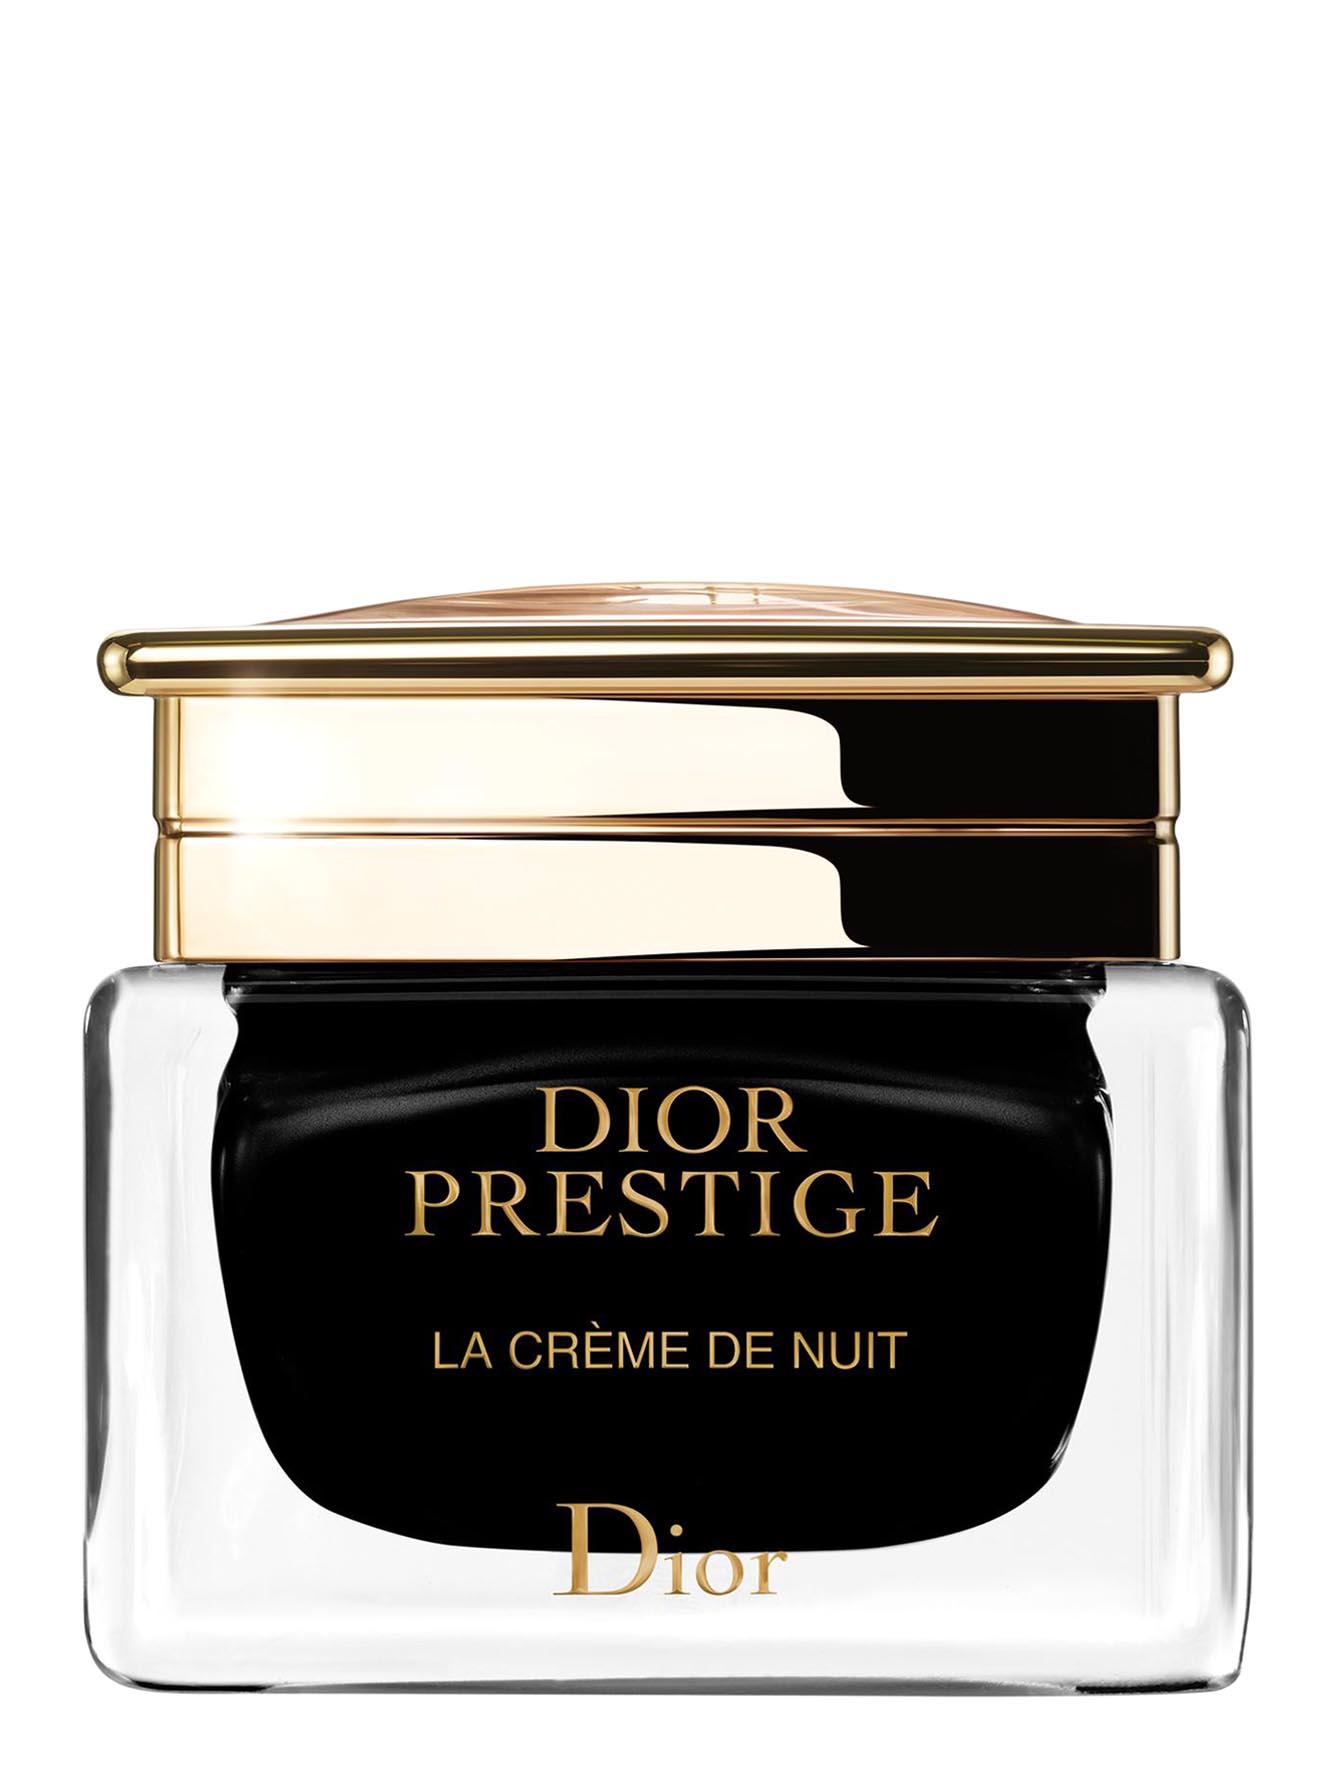 Крем для лица Dior Prestige, 50 мл - Общий вид